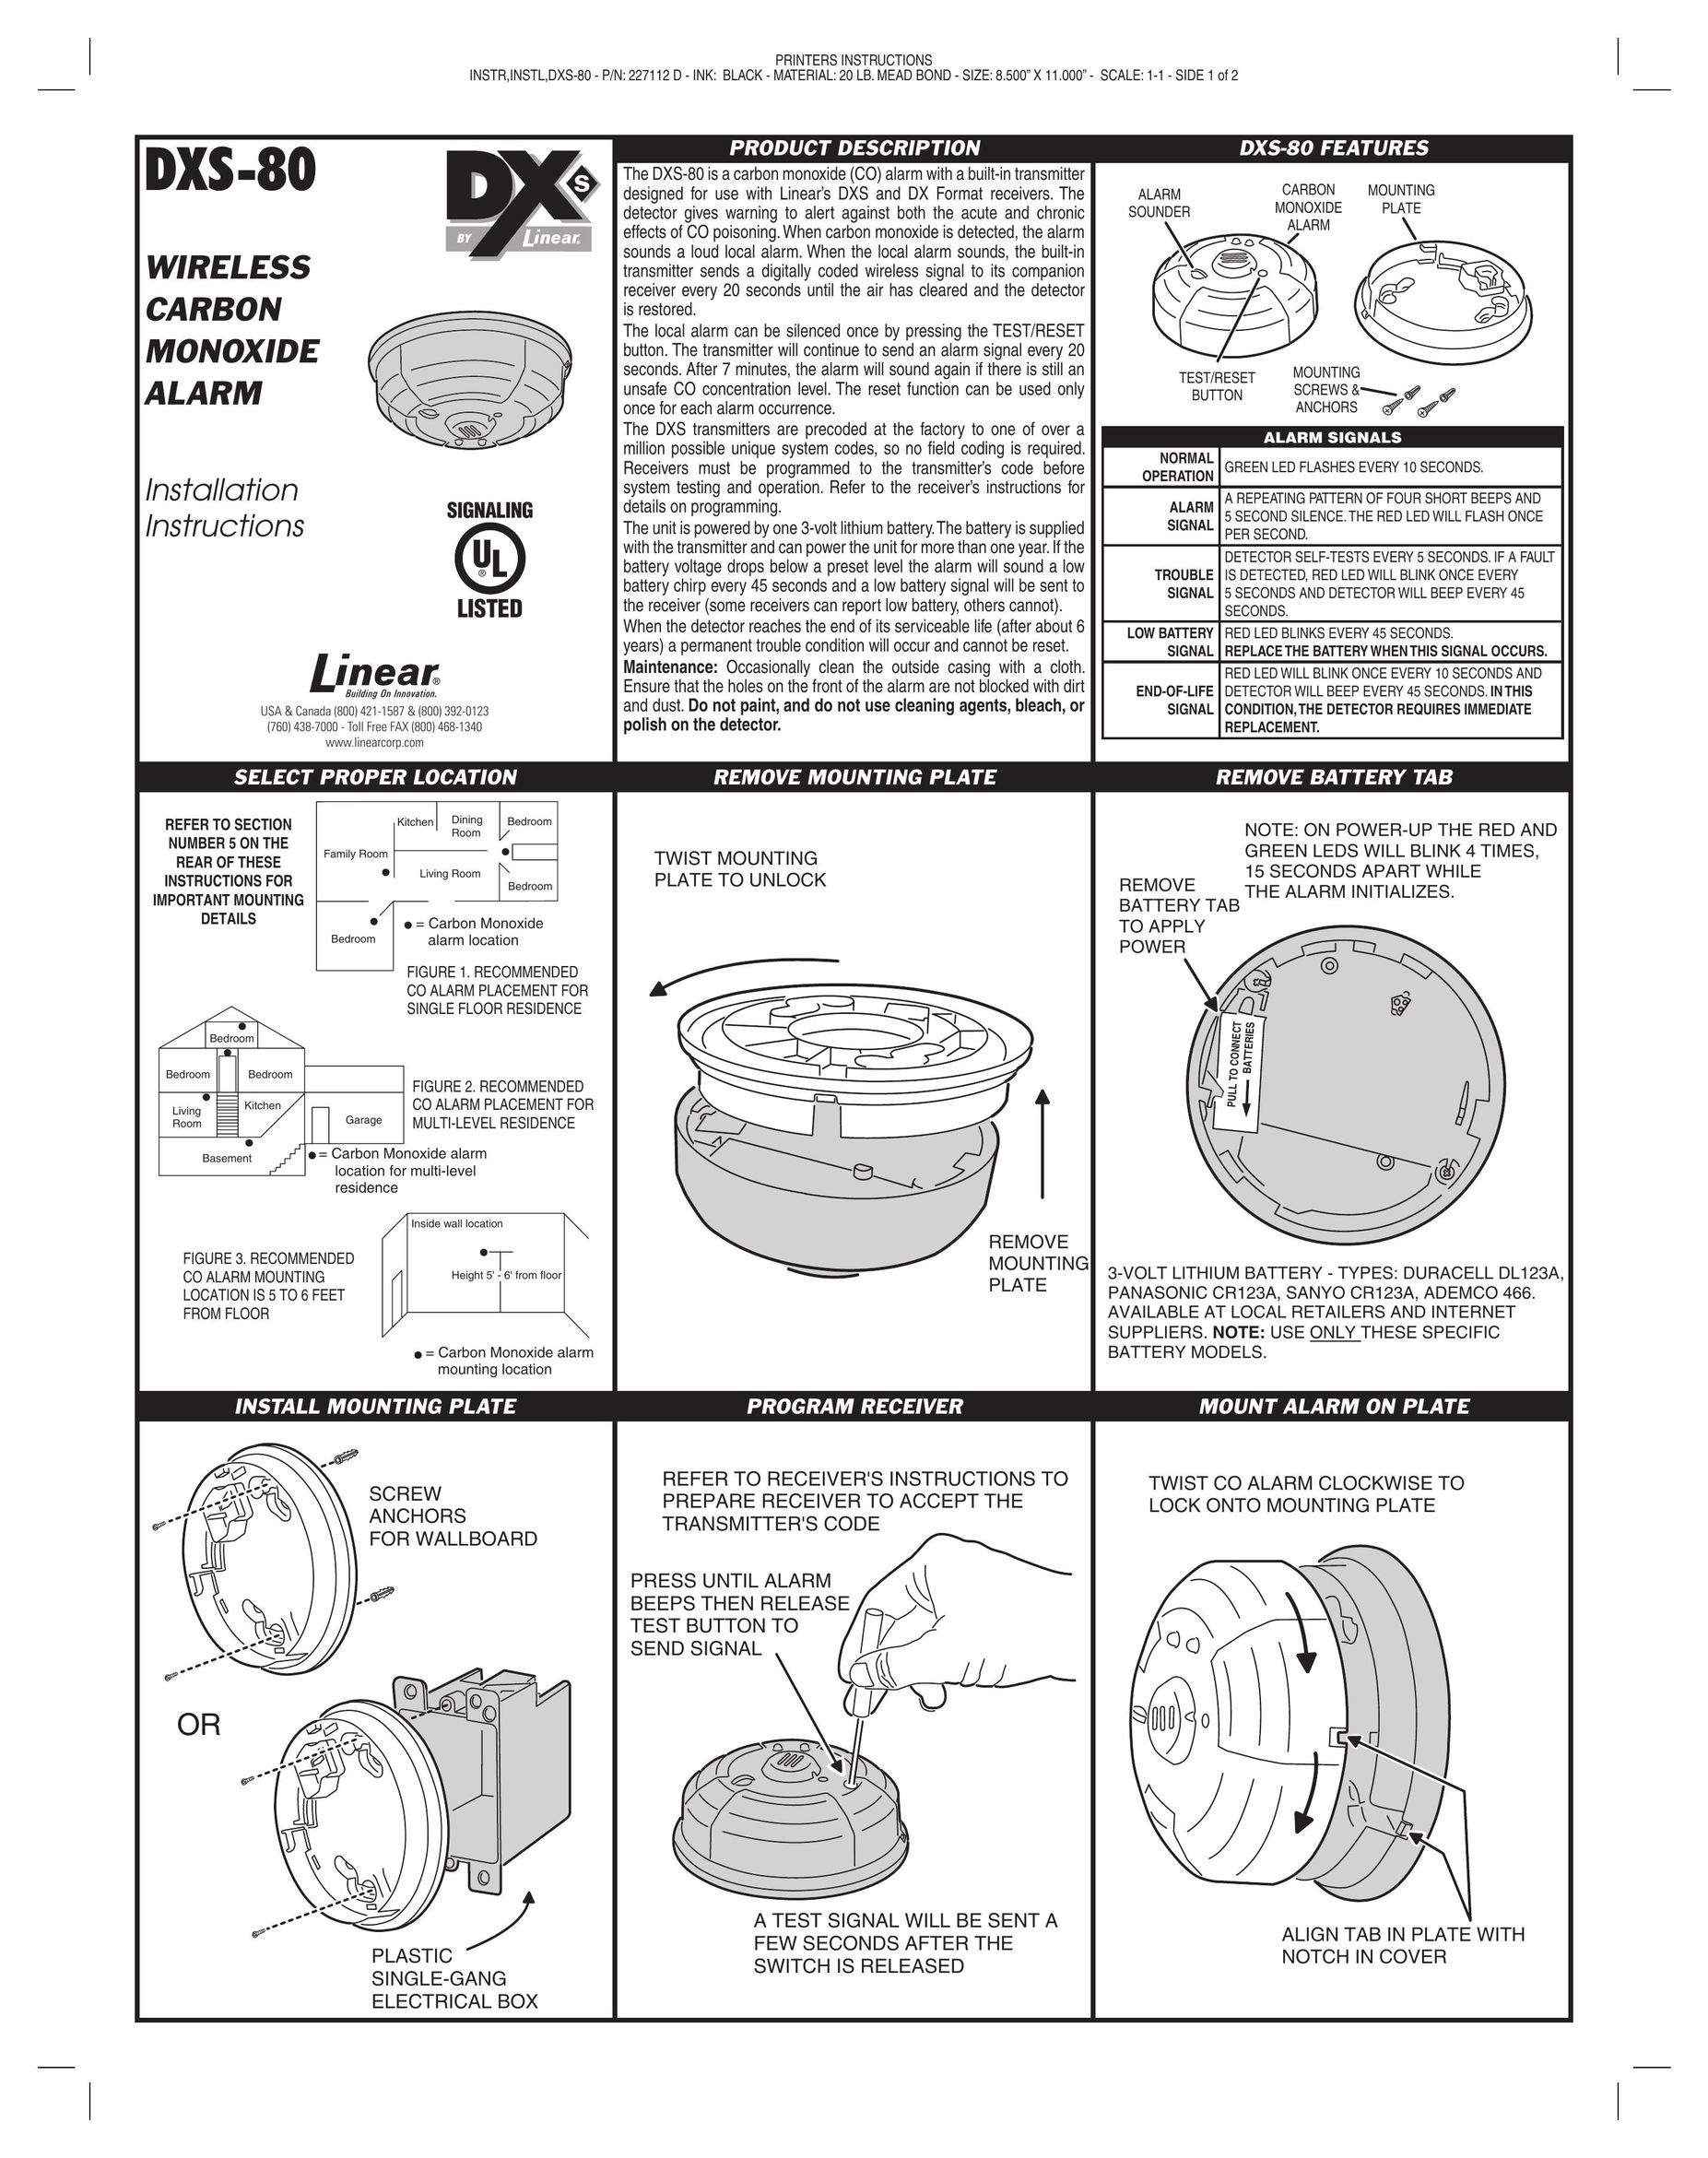 Linear DXS-80 Carbon Monoxide Alarm User Manual